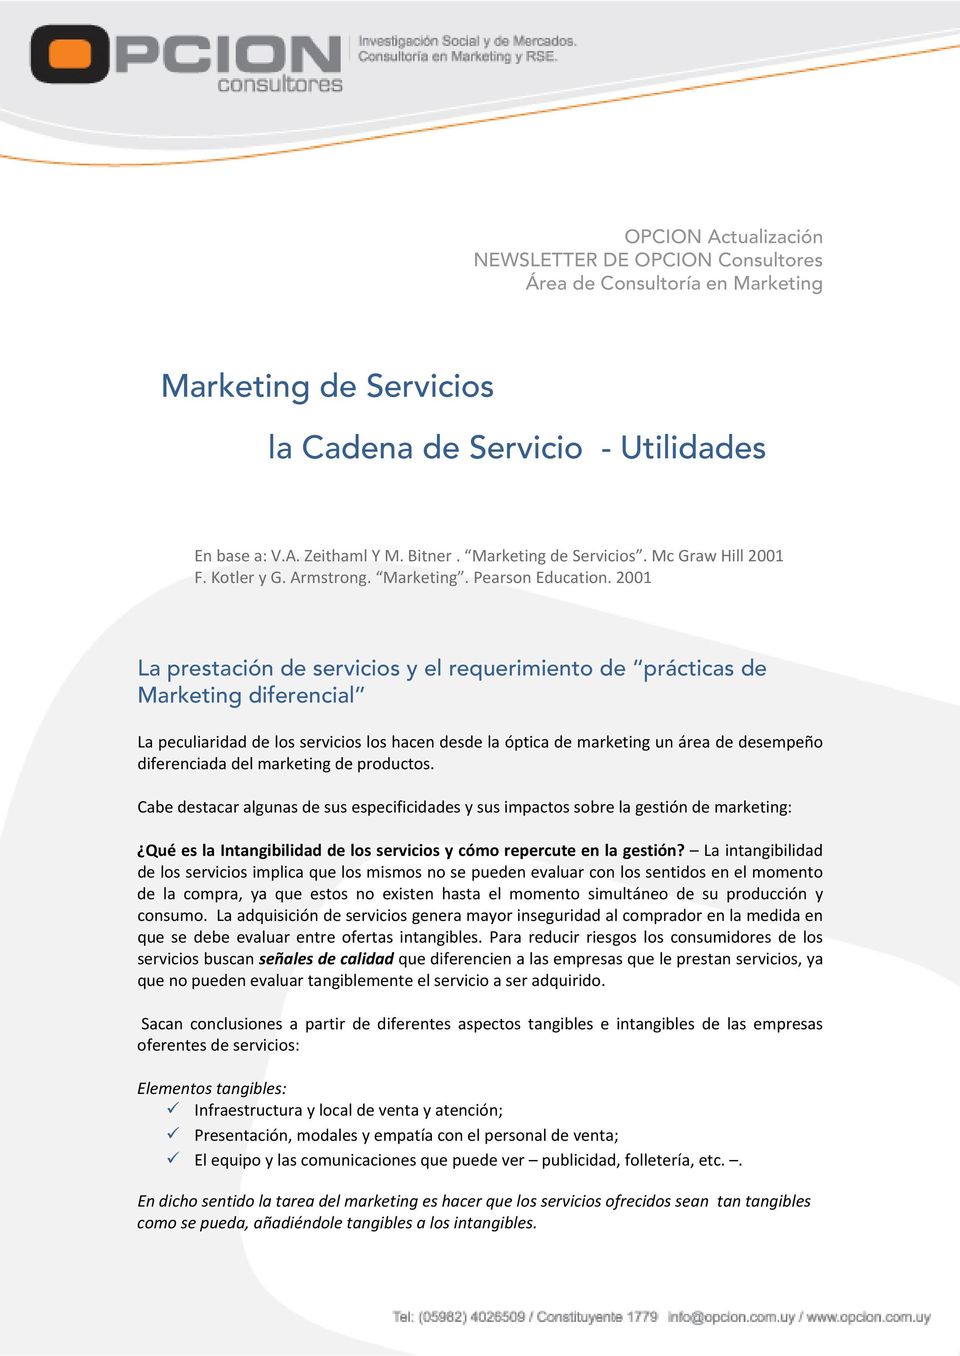 2001 La prestación de servicios y el requerimiento de prácticas de Marketing diferencial La peculiaridad de los servicios los hacen desde la óptica de marketing un área de desempeño diferenciada del